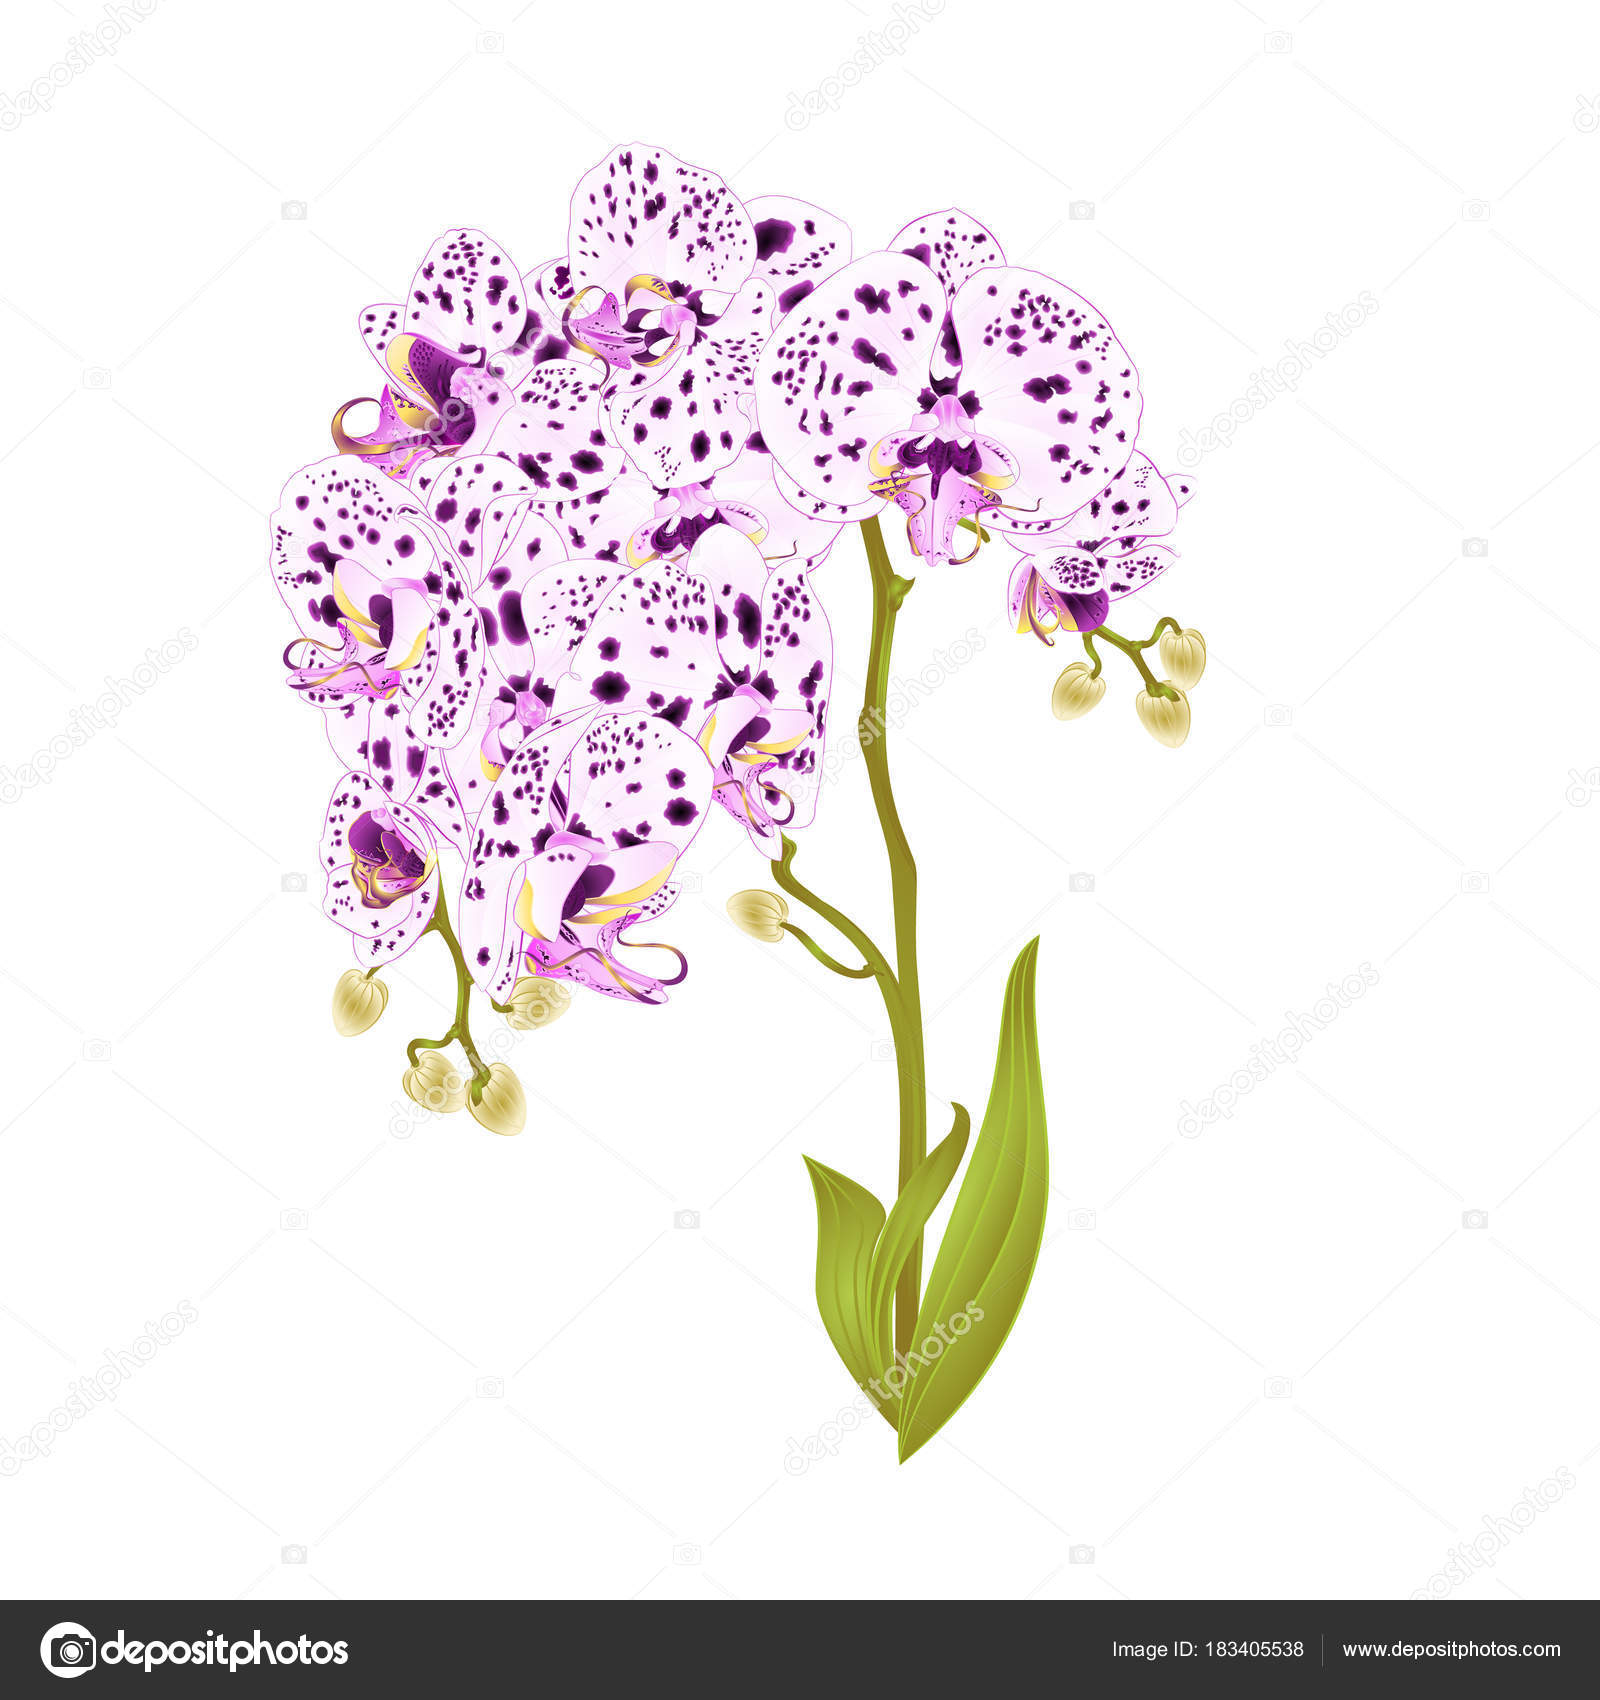 Orchidea di rami Phalaenopsis con puntini viola e bianco fiori e foglie tropicali piante staminali e germogli su un fondo bianco d annata botanica per